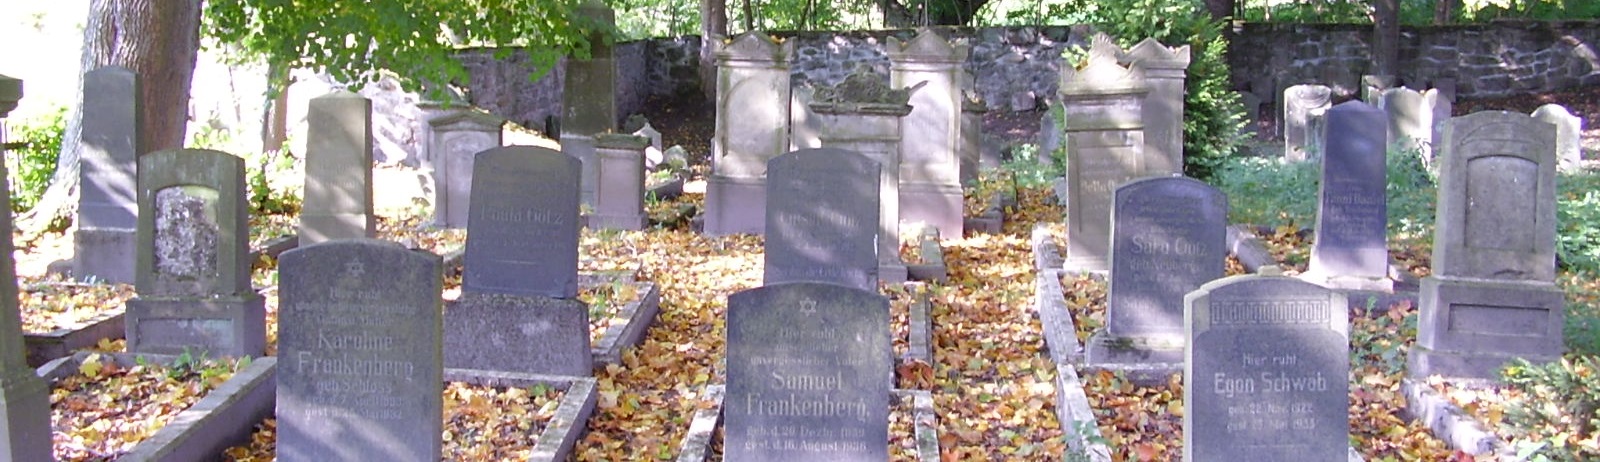 Der jüdische Friedhof in Schleusingen